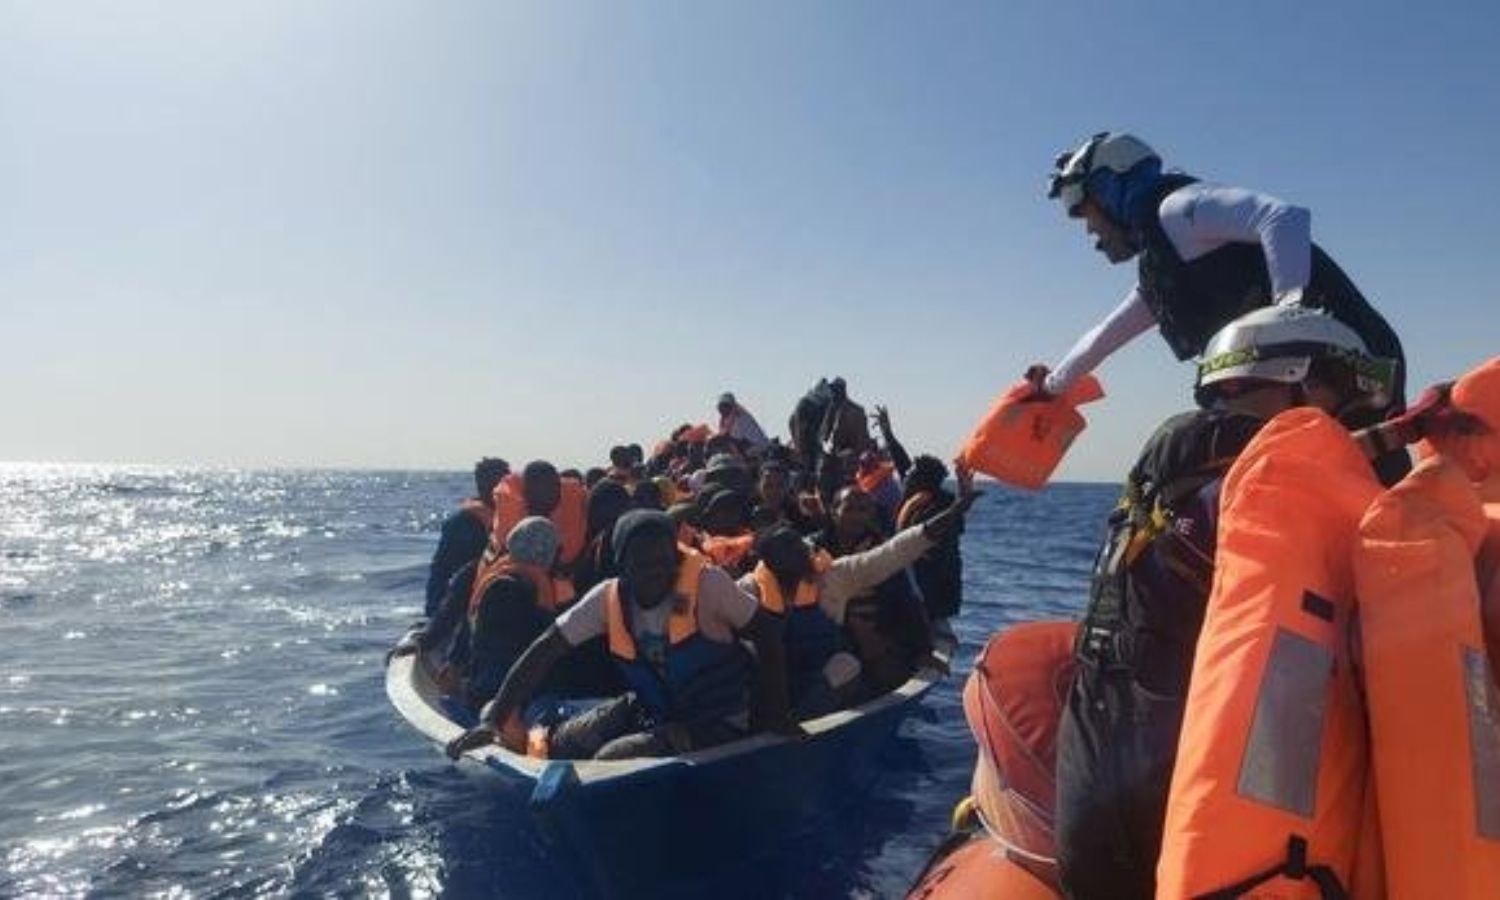 سفينة "أوشن فايكنغ" تنقذ 114 مهاجرًا من الغرق، قبالة السواحل الليبية، رويترز، 2021.